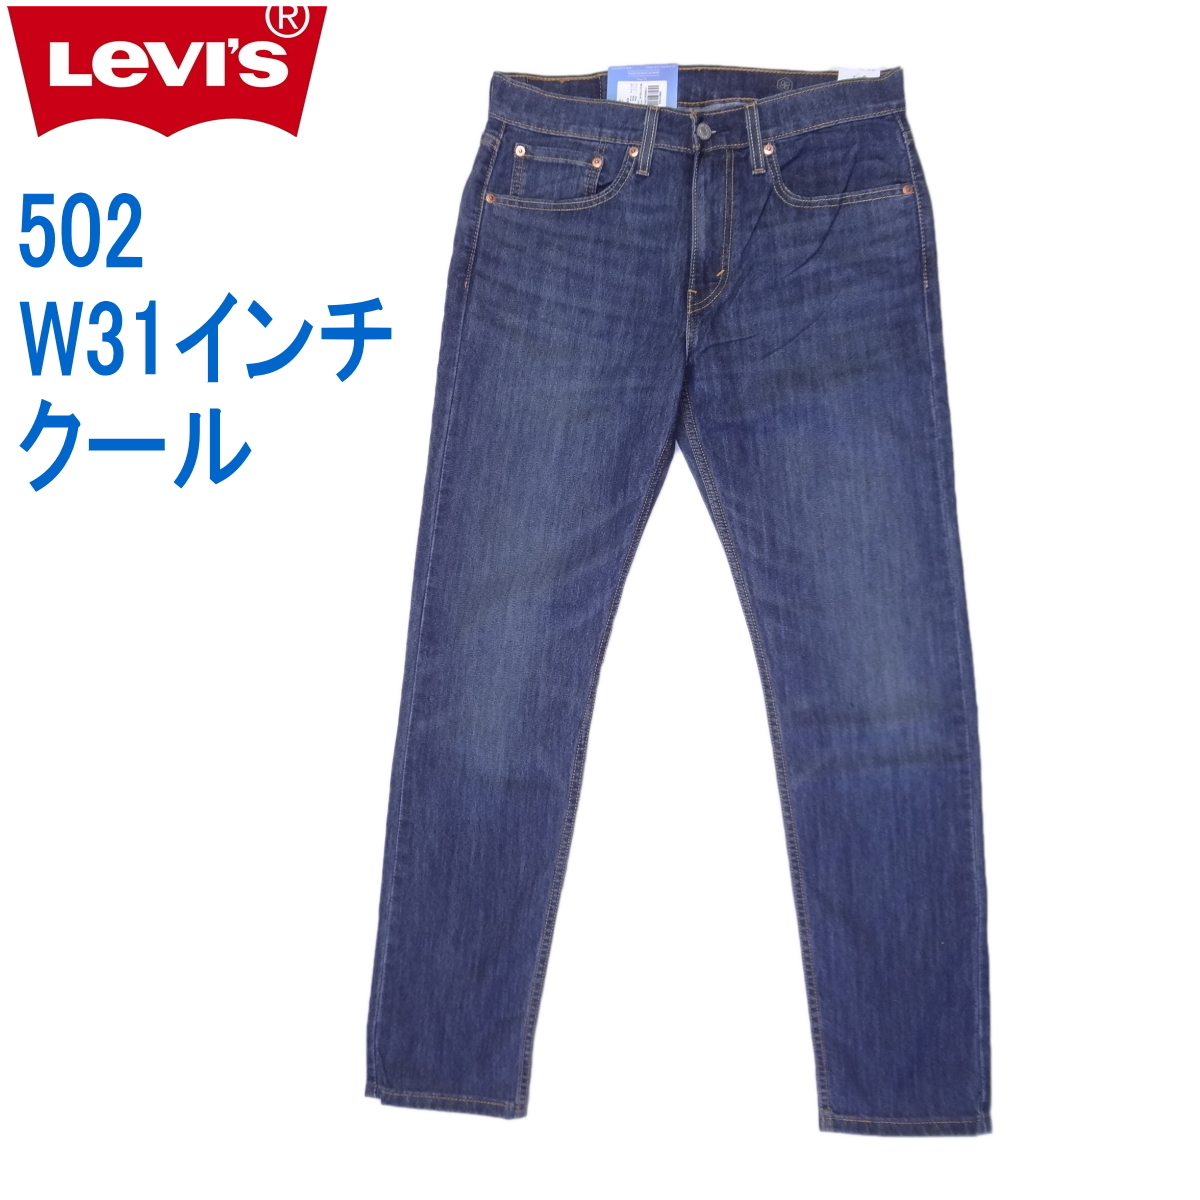 リーバイス 502 クールストレッチデニム ジーンズ Levi's W31インチ ブルー 裾上げ無料